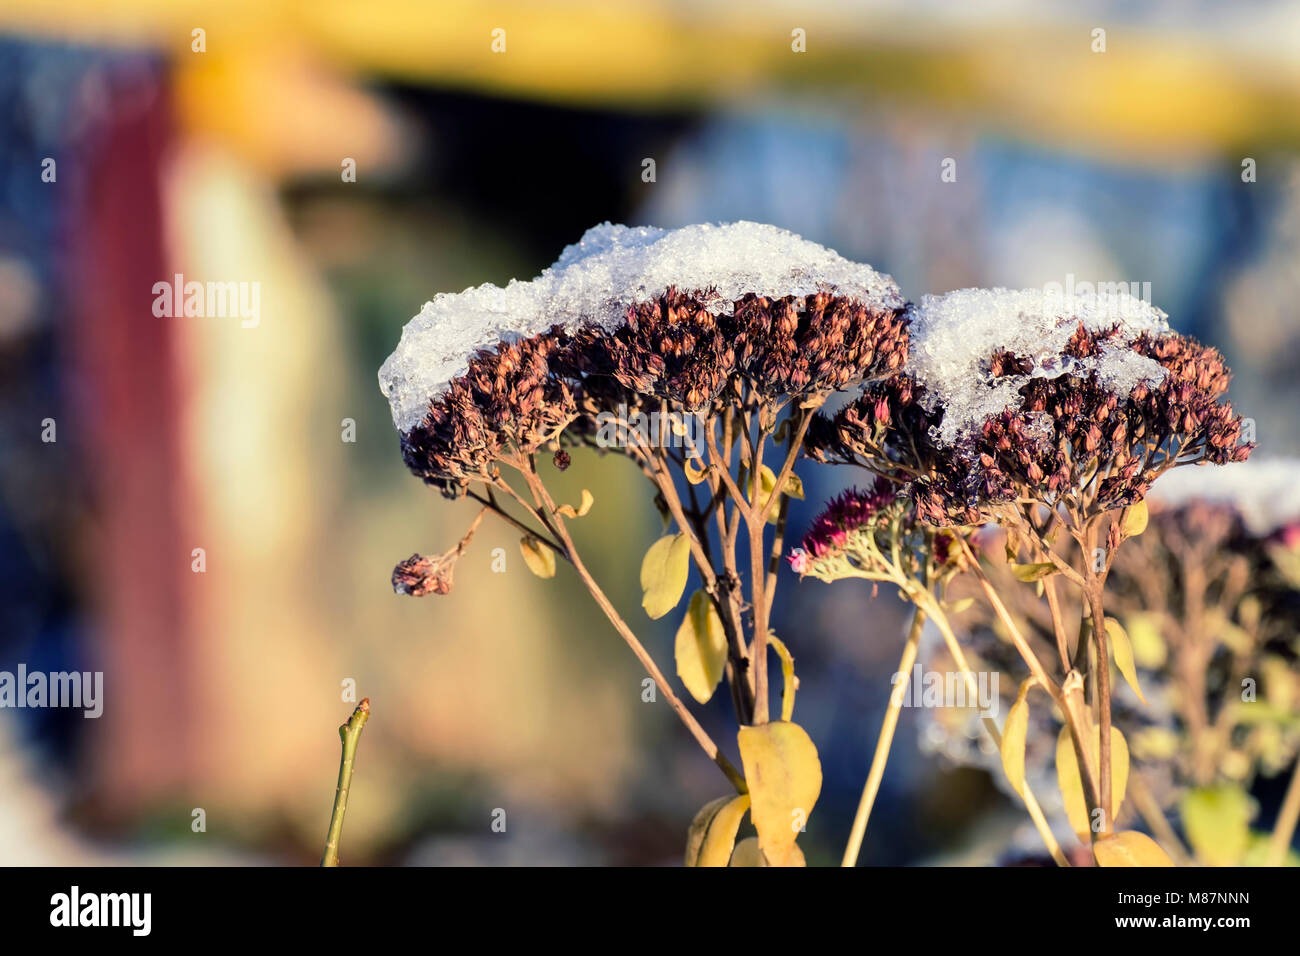 Les fleurs sèches de racine de gravier parsemée de neige (Eutrochium purpureum) Banque D'Images